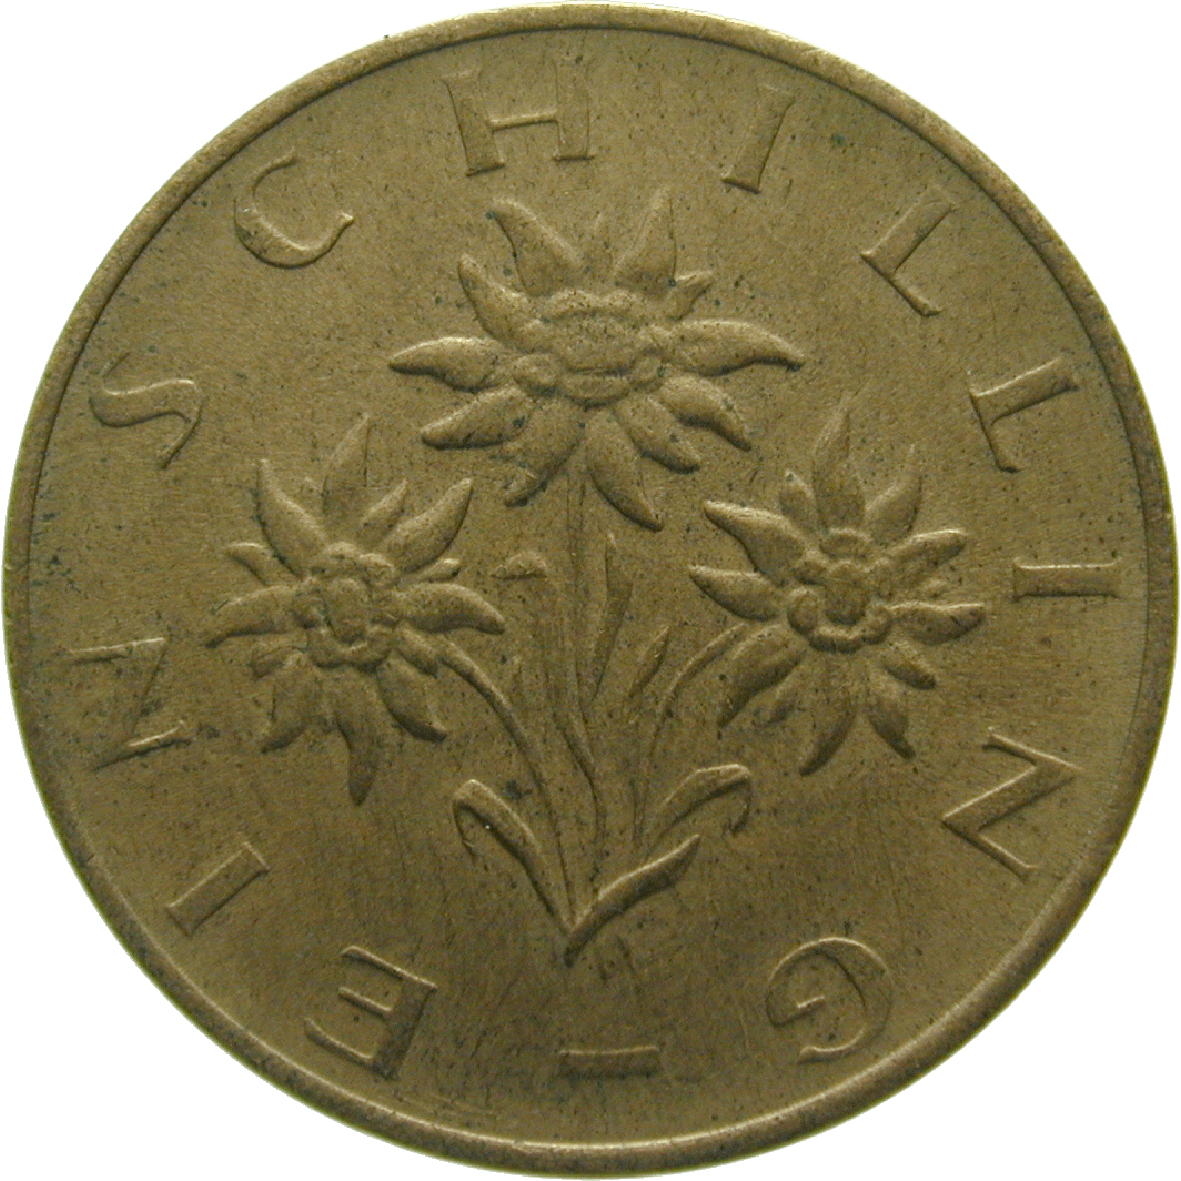 Republik Österreich, 1 Schilling 1974 (reverse)